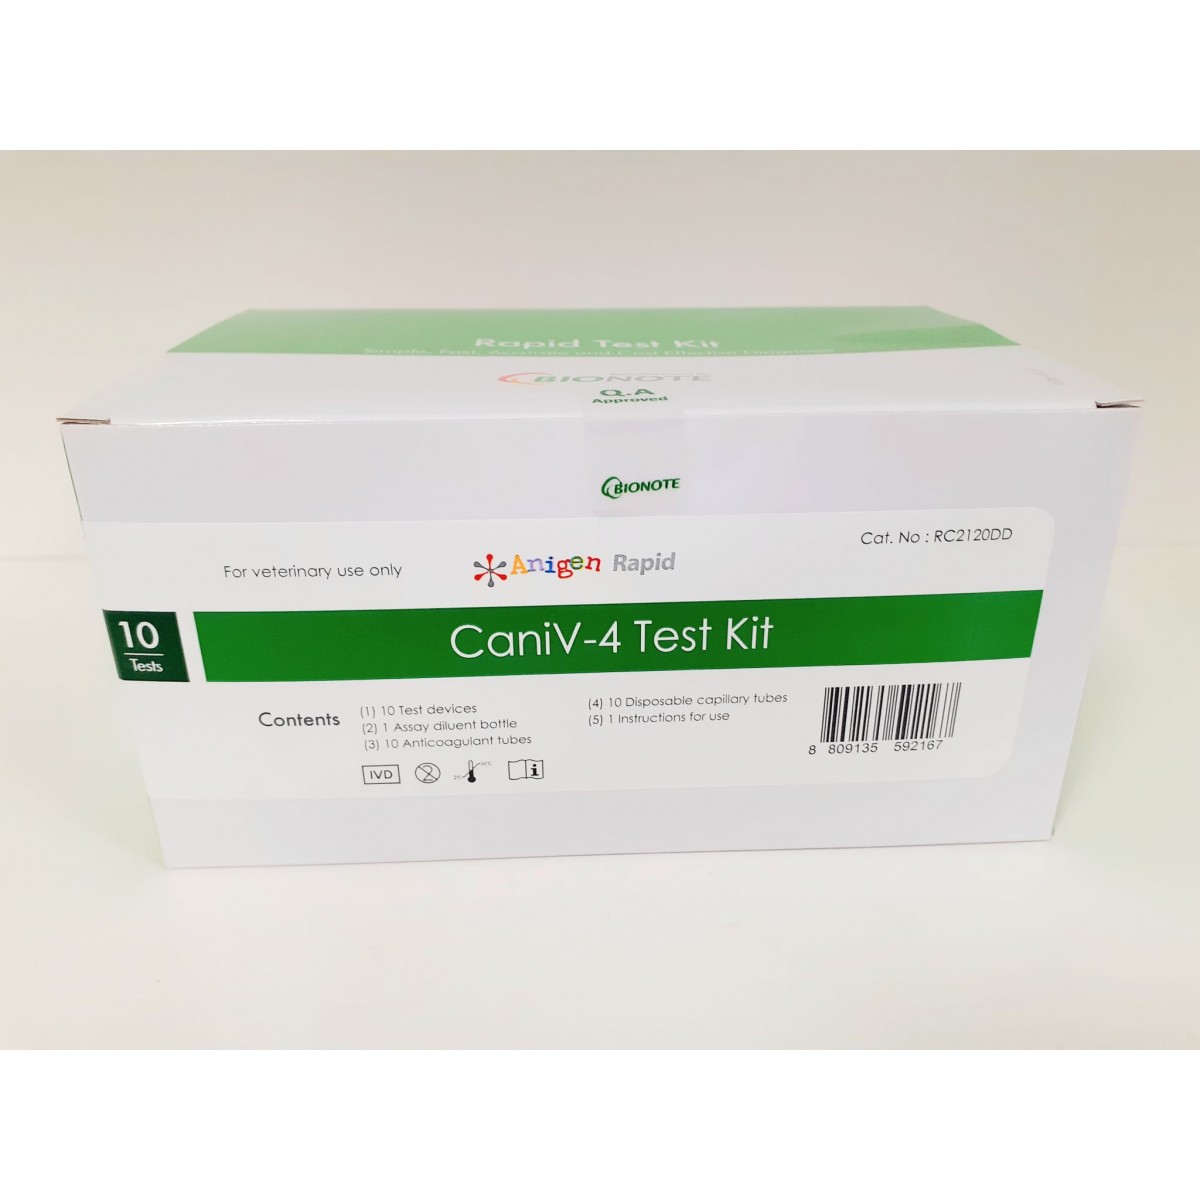 CaniV-4 Kit - Dirofilaria, Ehrlichia, Lyme Borrelia, Anaplasma - 10 Test